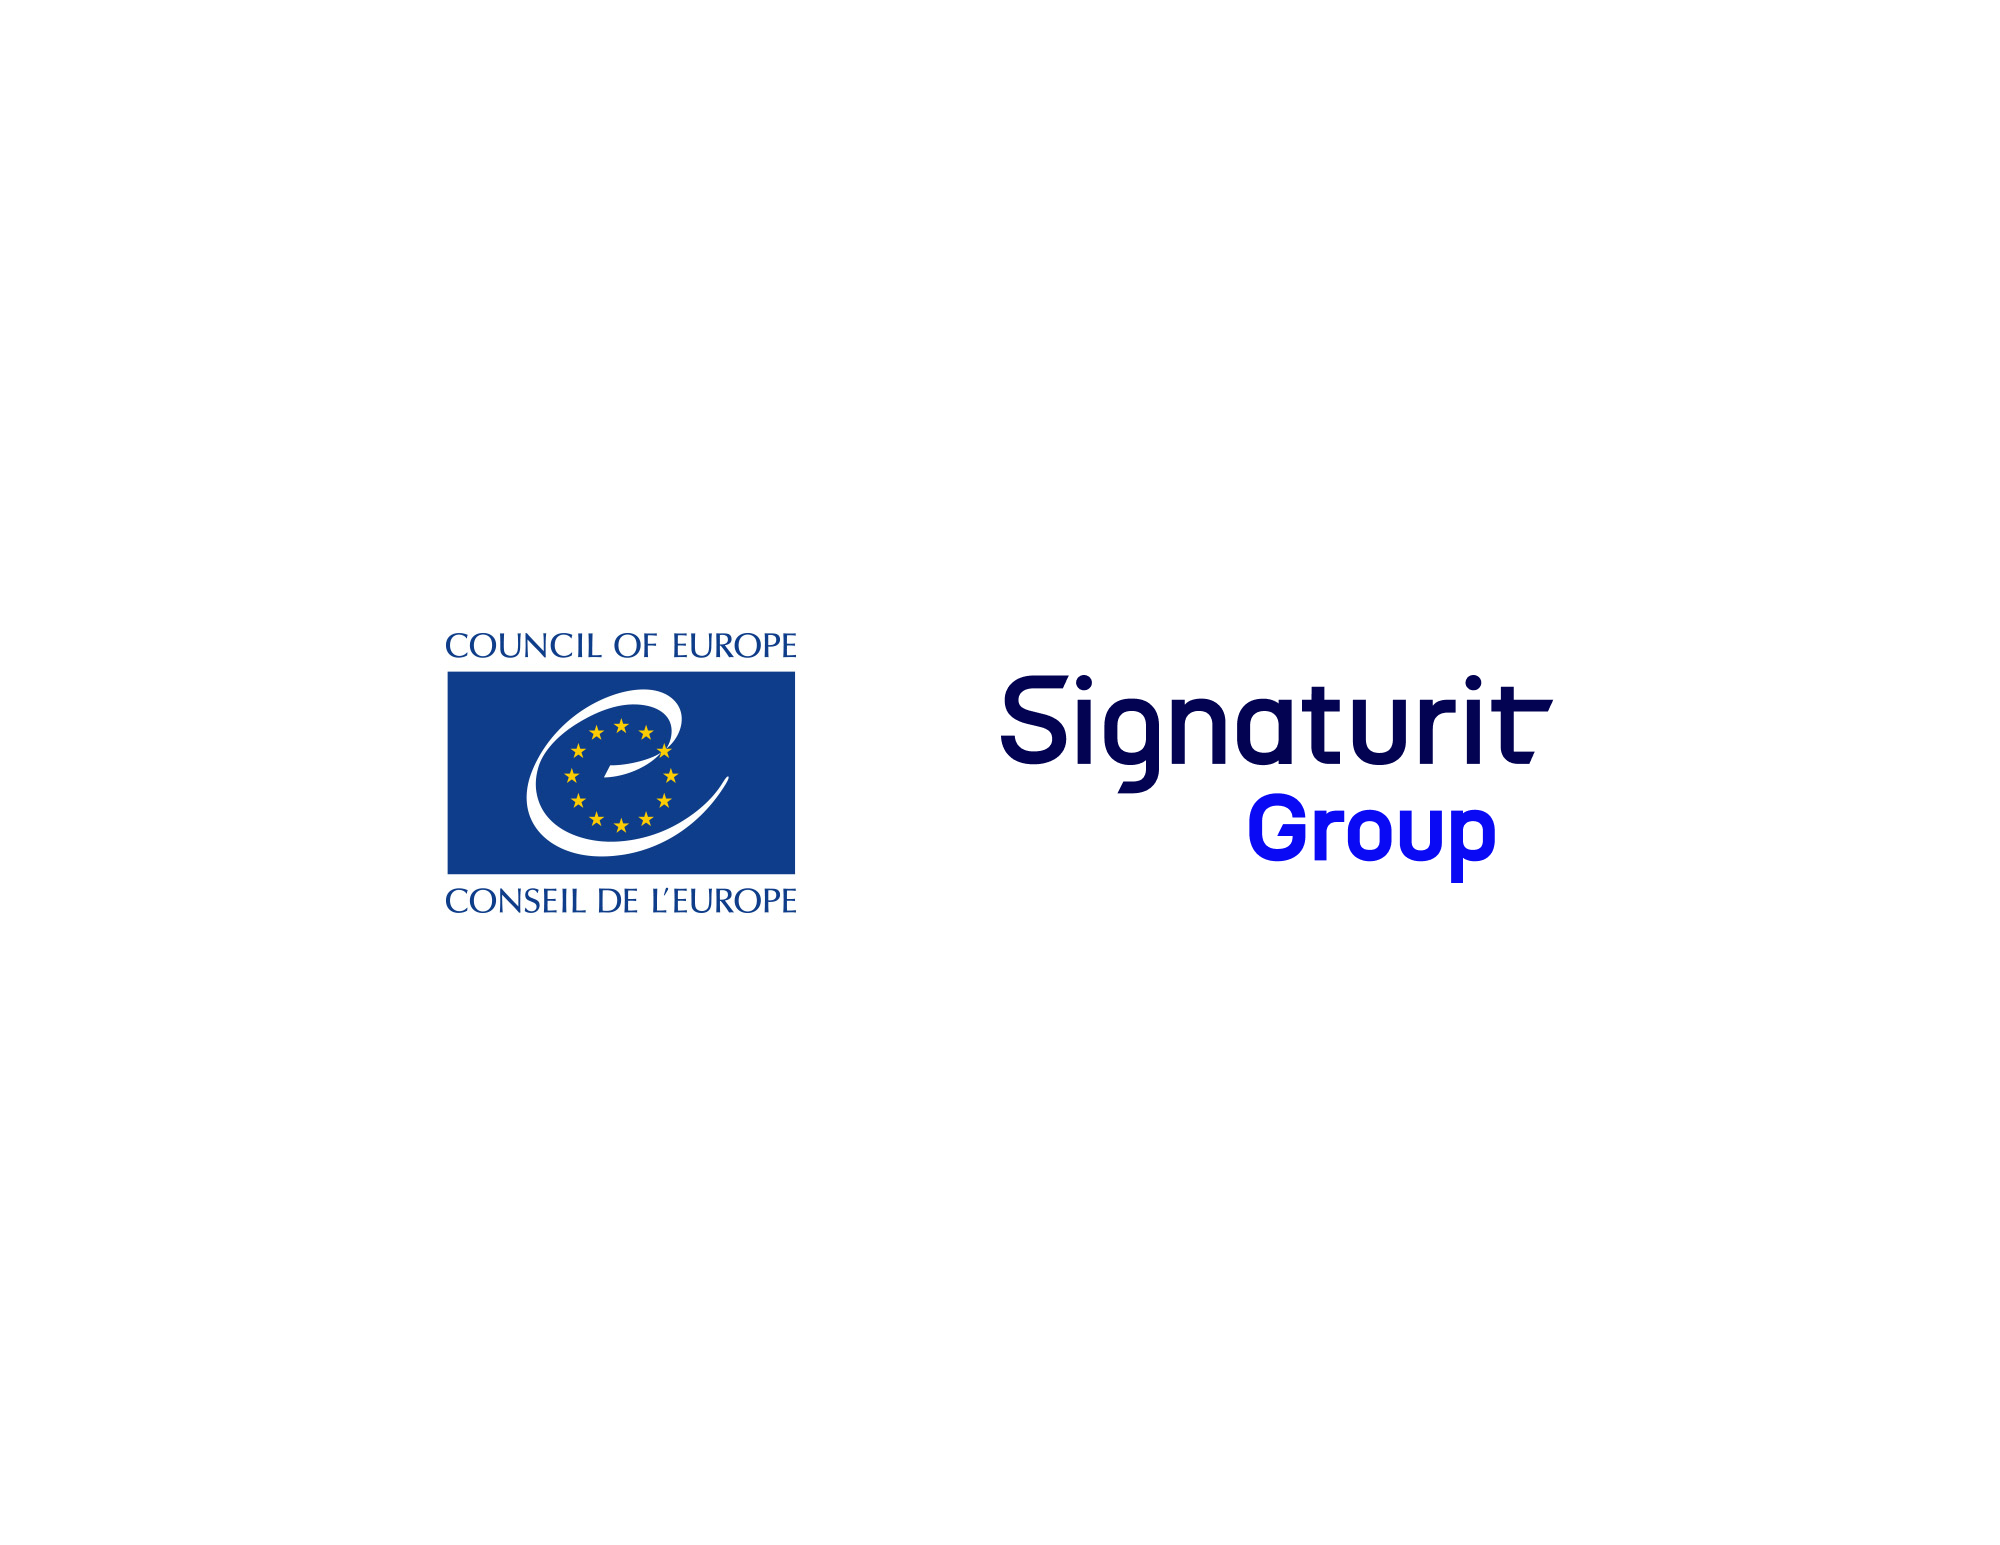 Le Conseil de l’Europe choisit Signaturit pour gérer les signatures électroniques